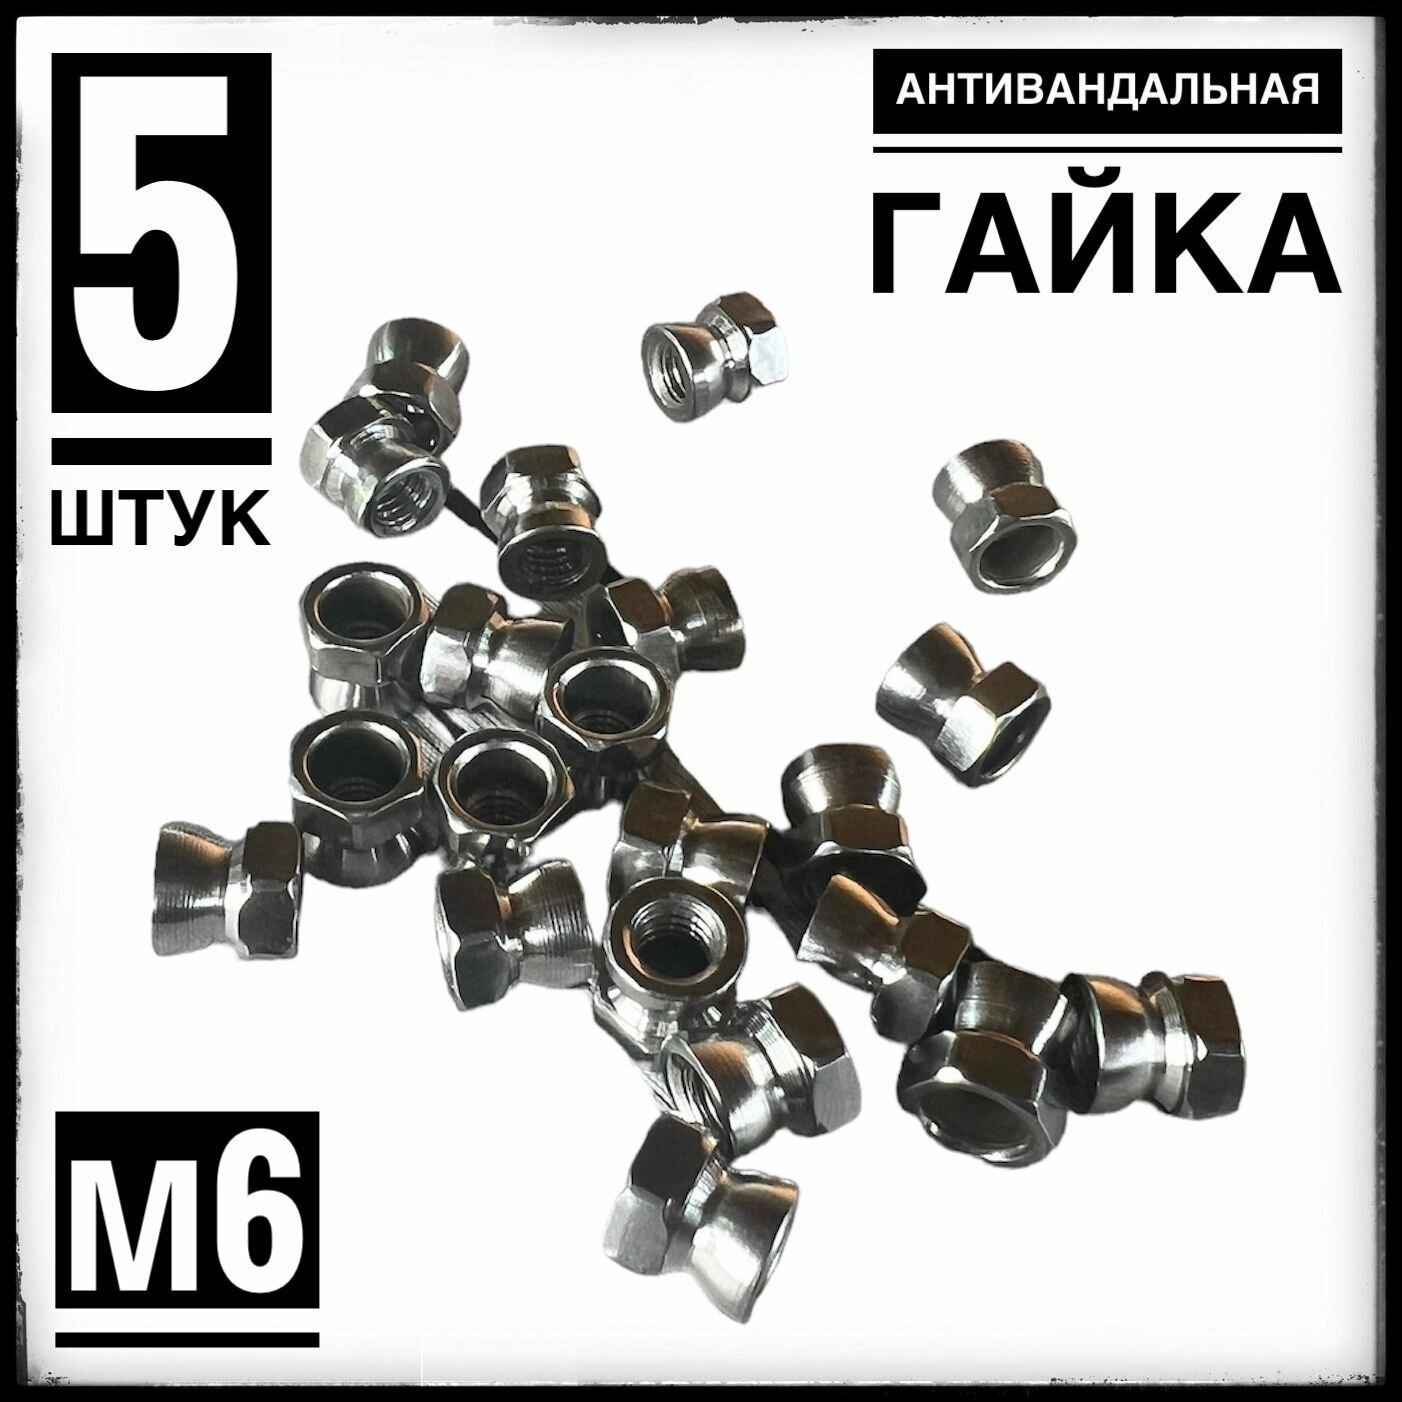 Гайка антивандальная (отрывная), нержавеющая сталь, М6 (5 штук)